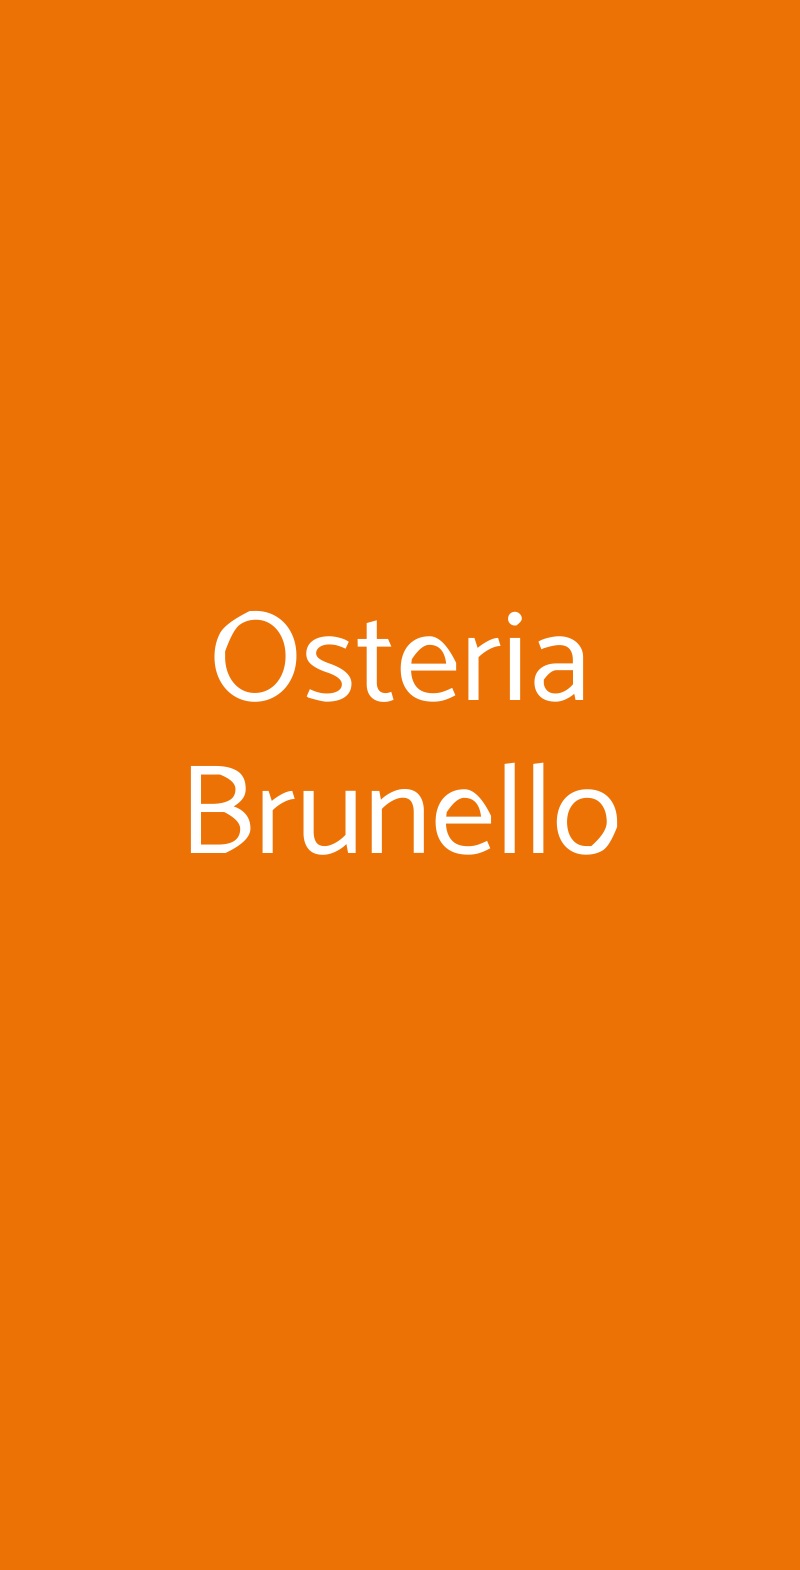 Osteria Brunello Milano menù 1 pagina